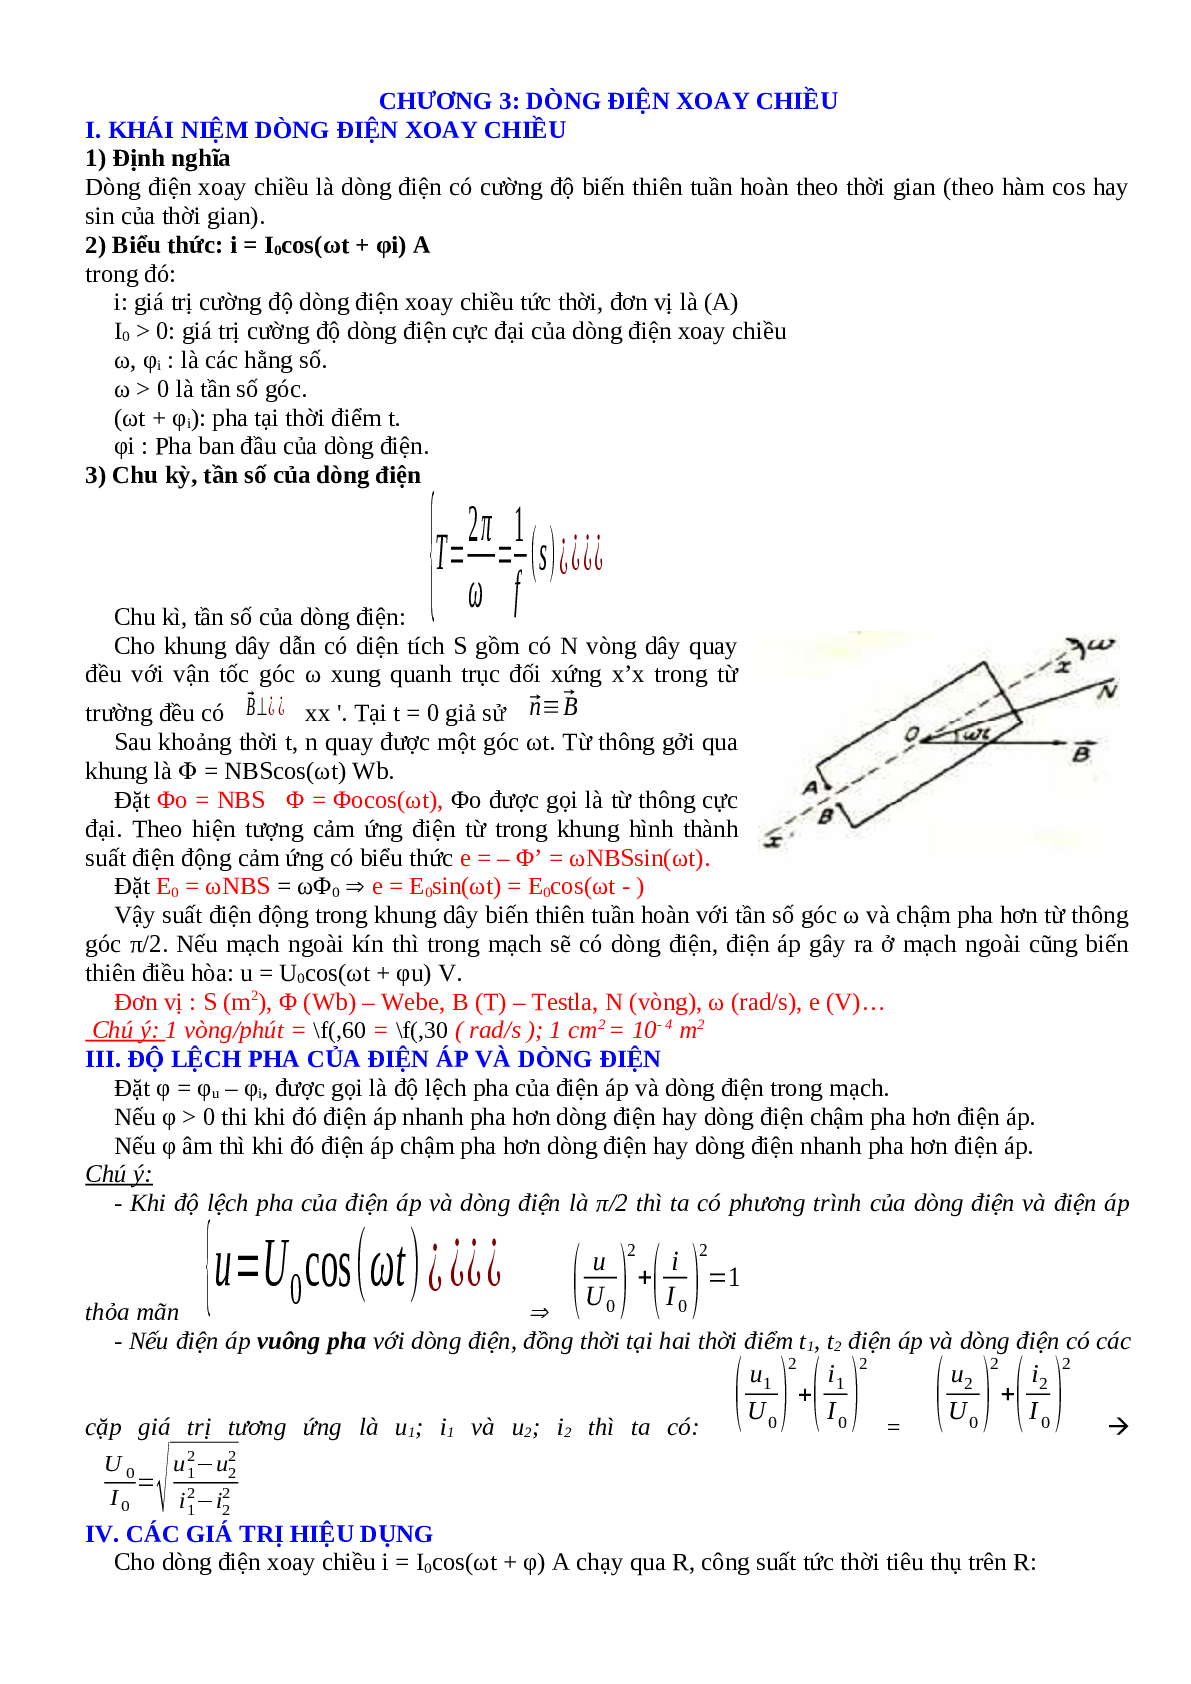 Lý thuyết, bài tập về Điện xoay chiều hay nhất - Vật lí 12 (trang 1)